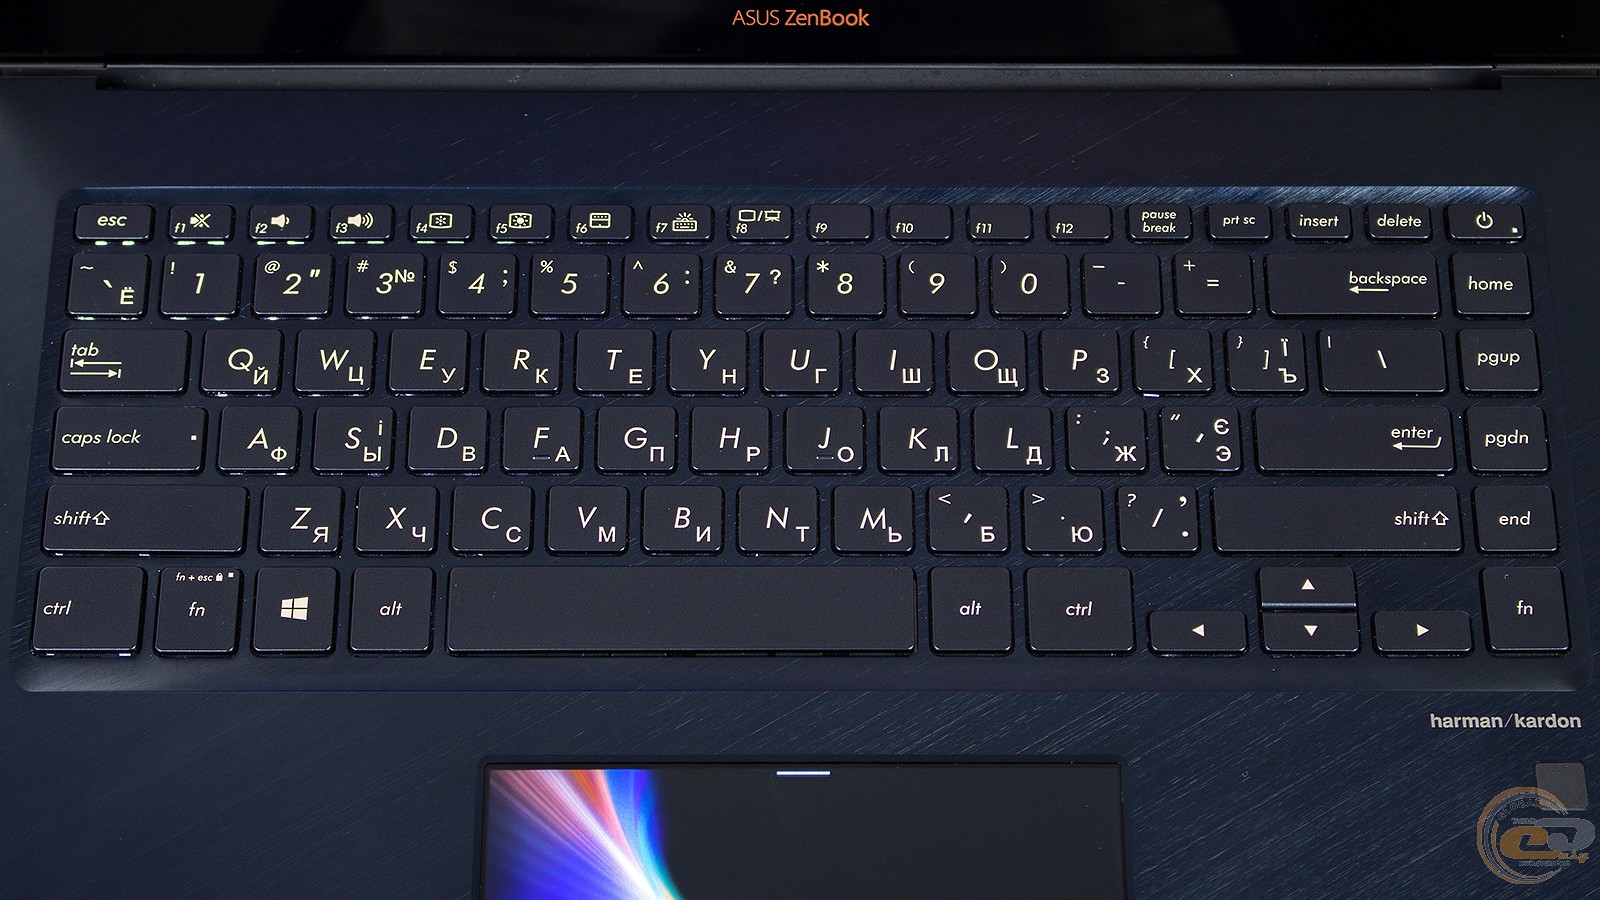 Как включить asus zenbook. Ноутбук ASUS ZENBOOK Pro 15 ux580ge. Клавиатура у ноутбука ASUS ZENBOOK 15. Как включить калькулятор на асус зенбук. Как сделать скрин на асус зенбук.